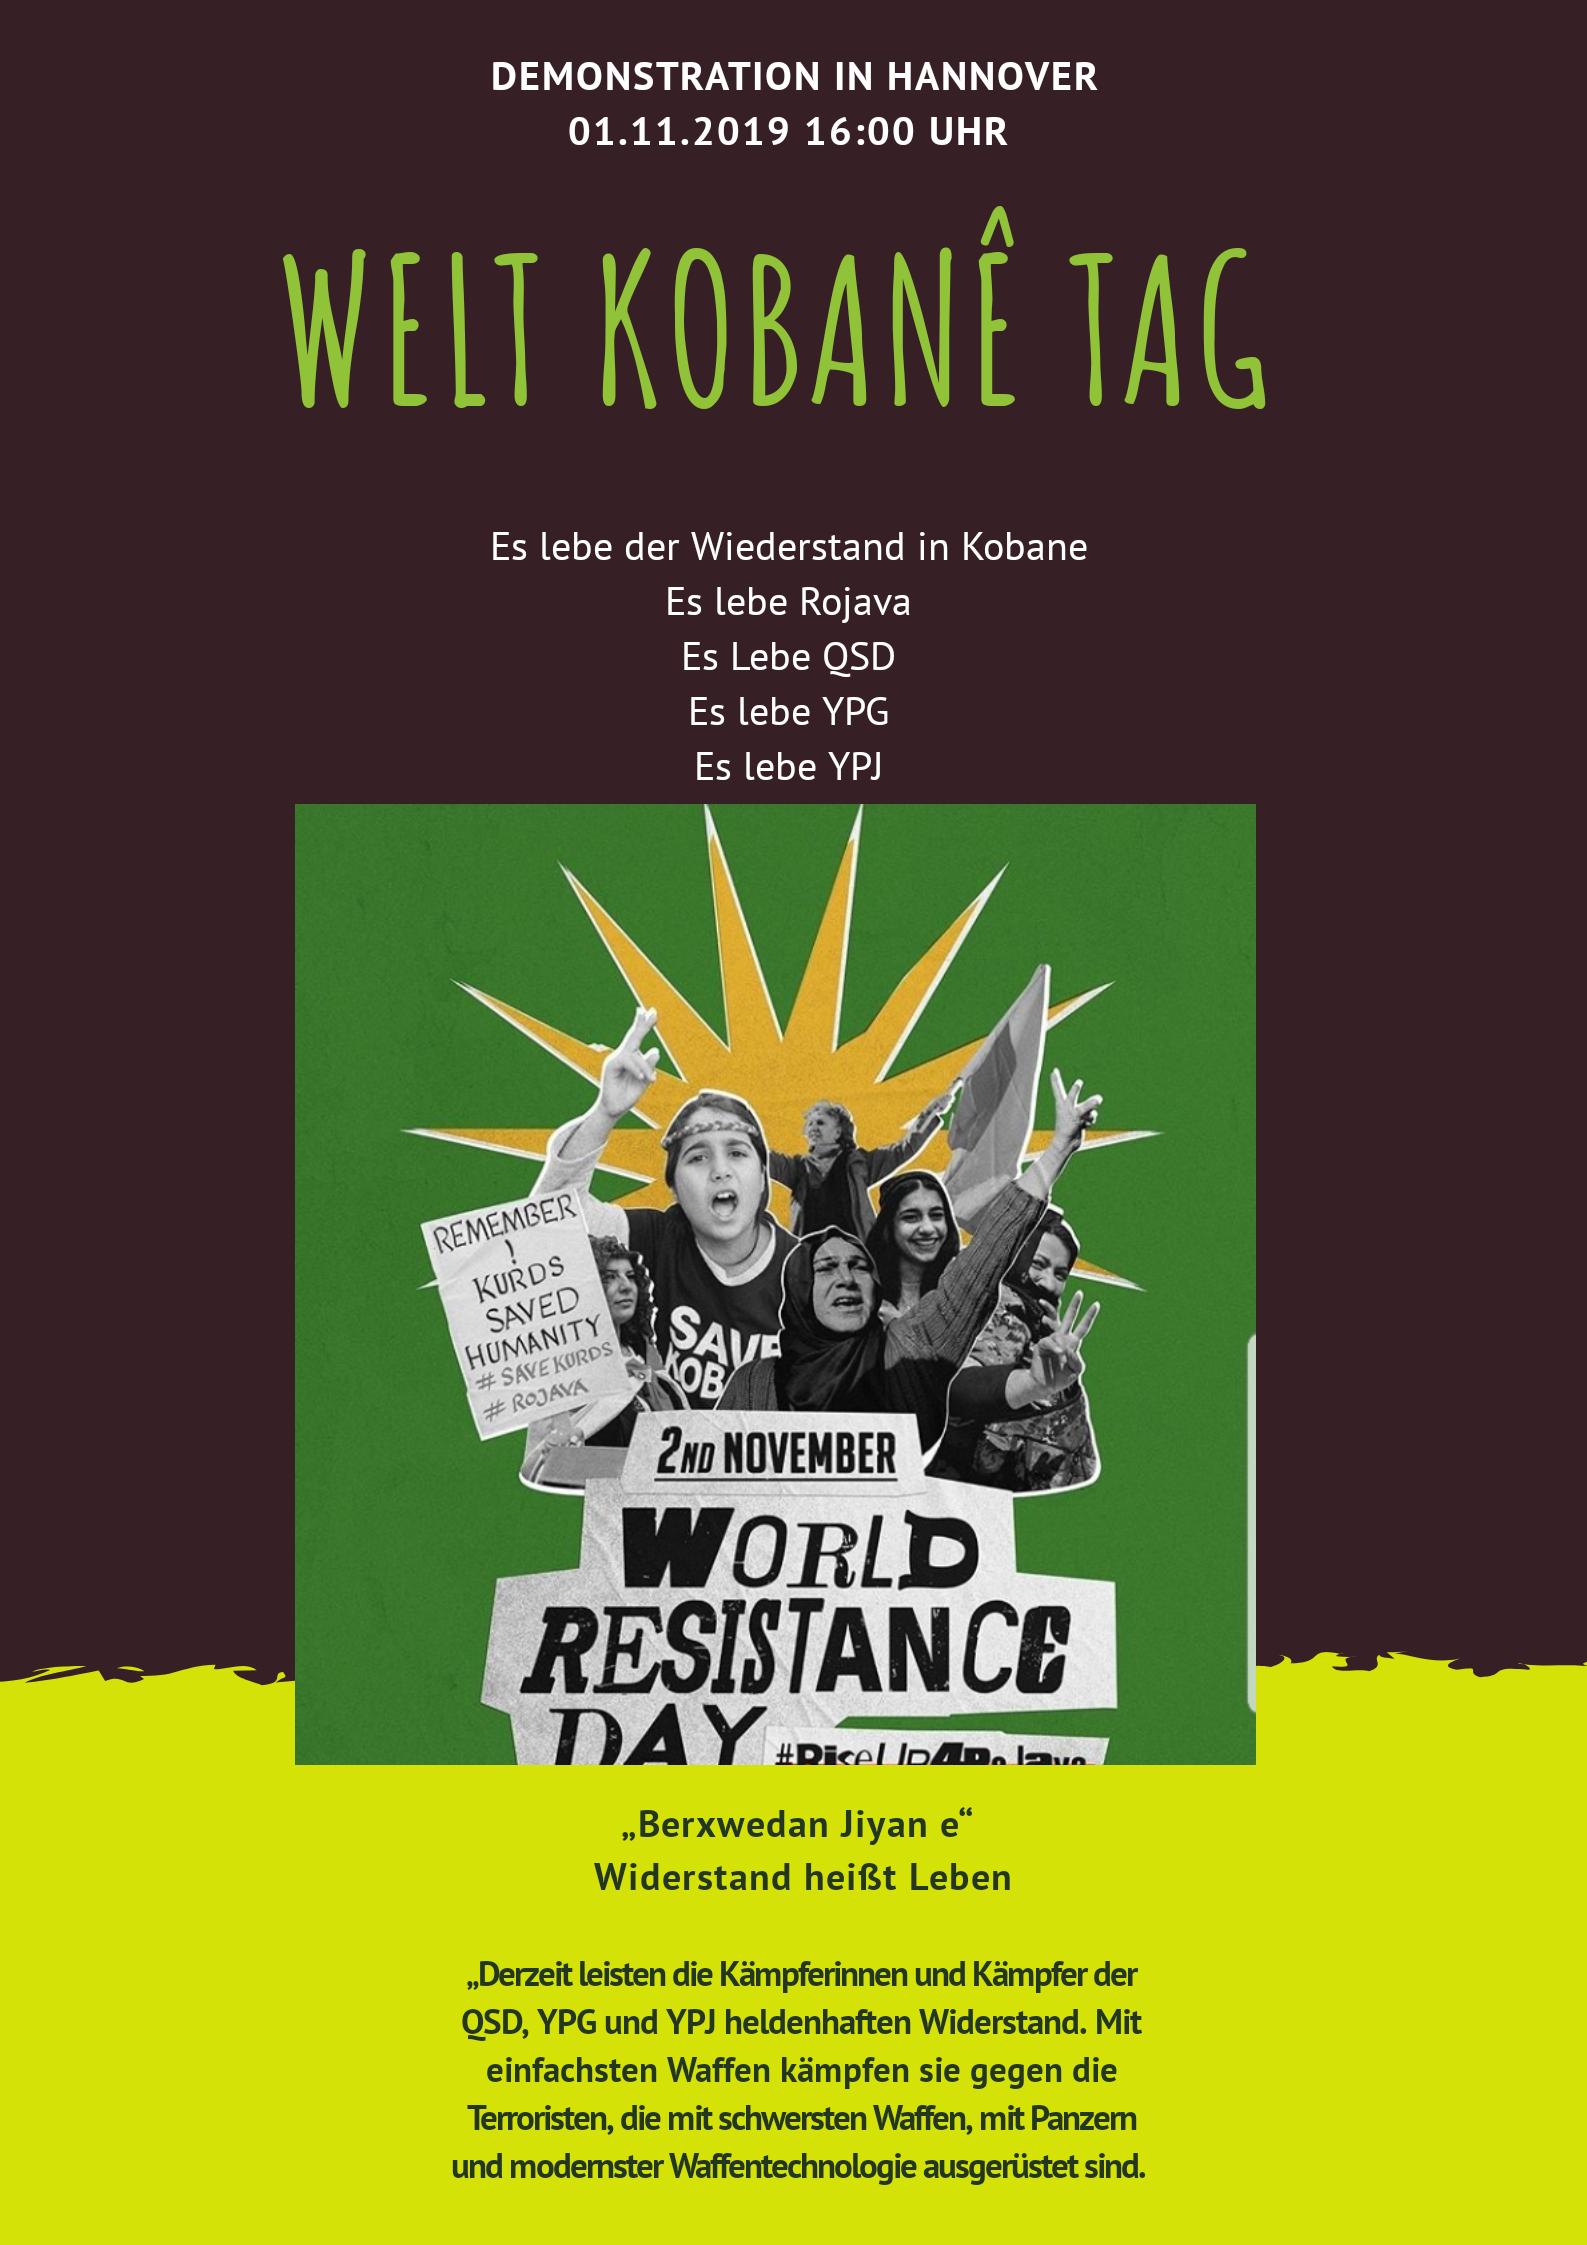 Welt-Kobane-Tag 2019 Hannover Demonstration